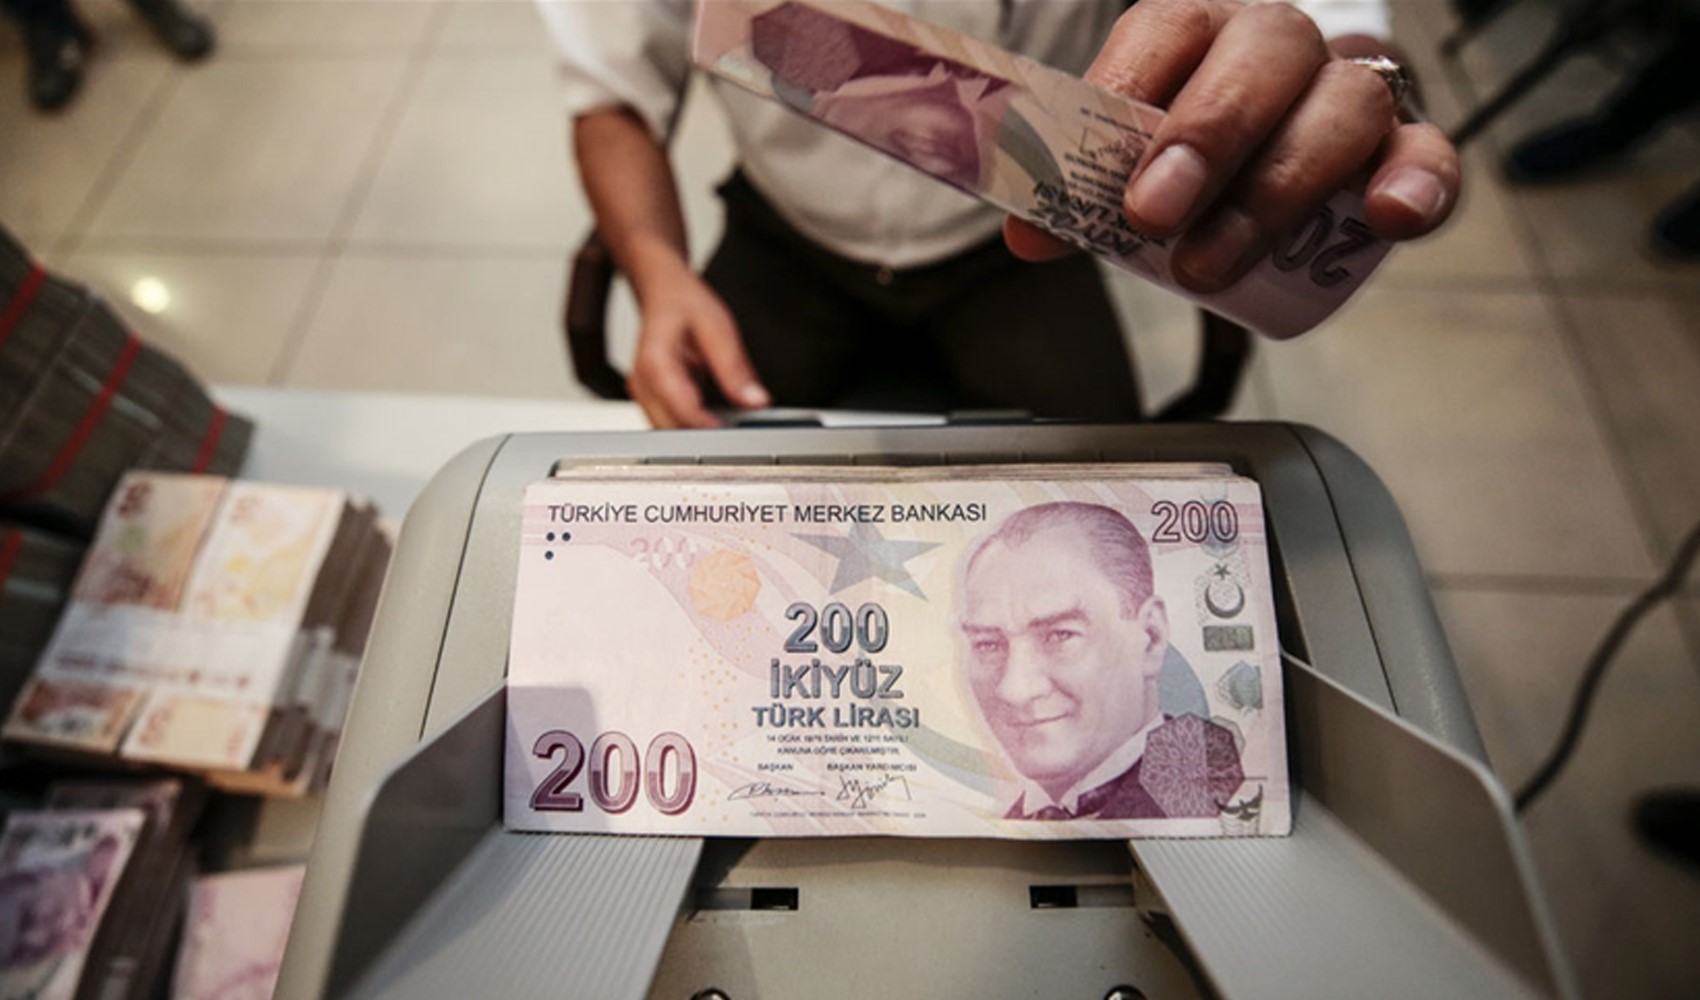 TCMB sürpriz yaptı bankaların faizleri uçuşa geçti: İşte 100 bin liranın getirisi...